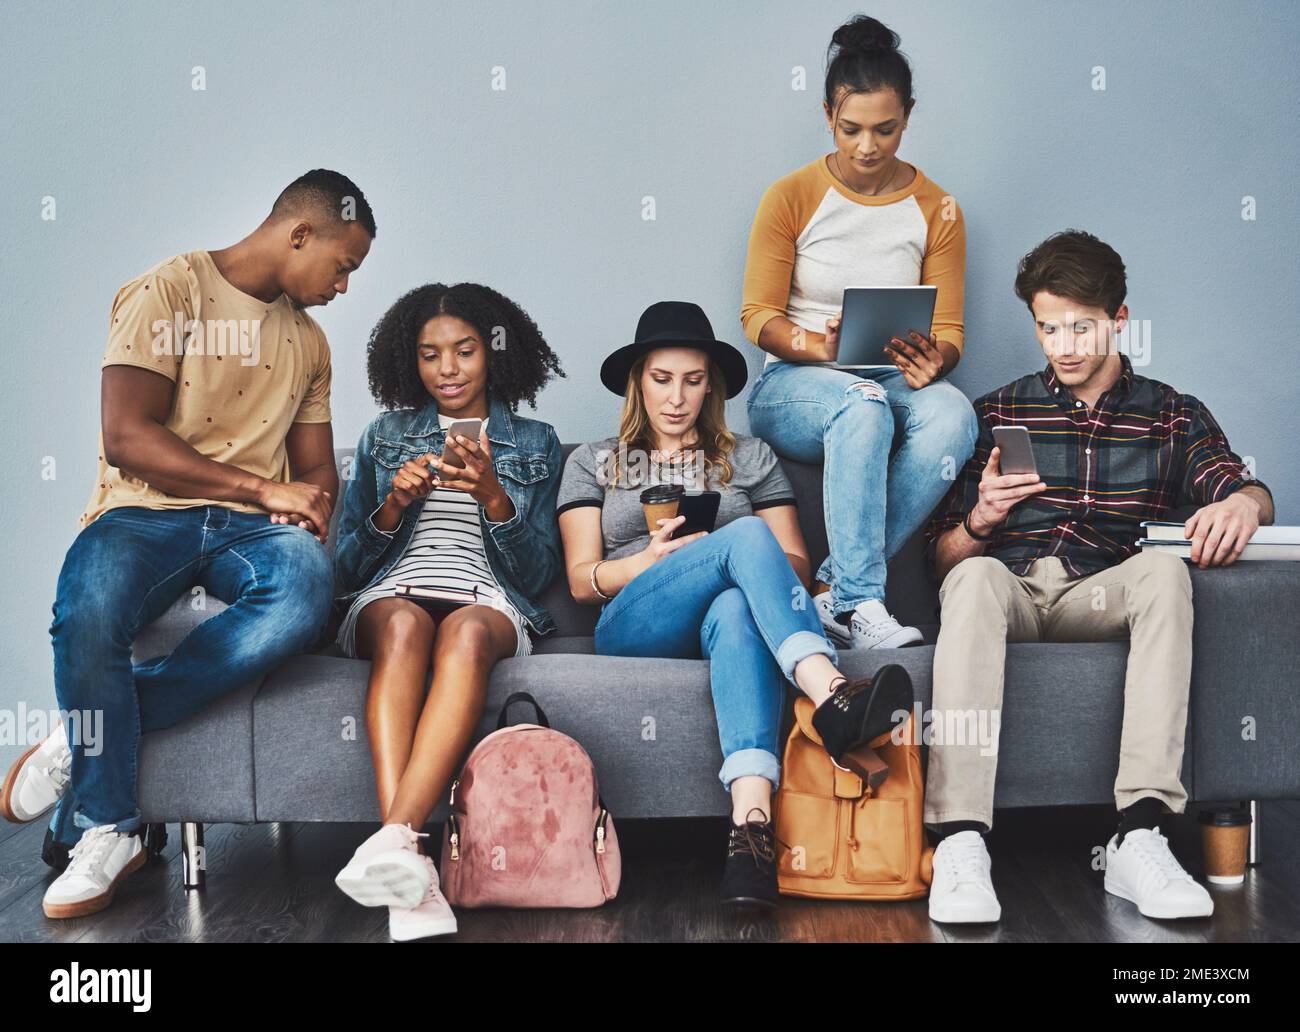 Keine Gruppe von Menschen ist besser in sozialen Medien als Millennials. Studiofoto von jungen Leuten, die auf einem Sofa sitzen und Wireless-Technologie gegen A verwenden Stockfoto